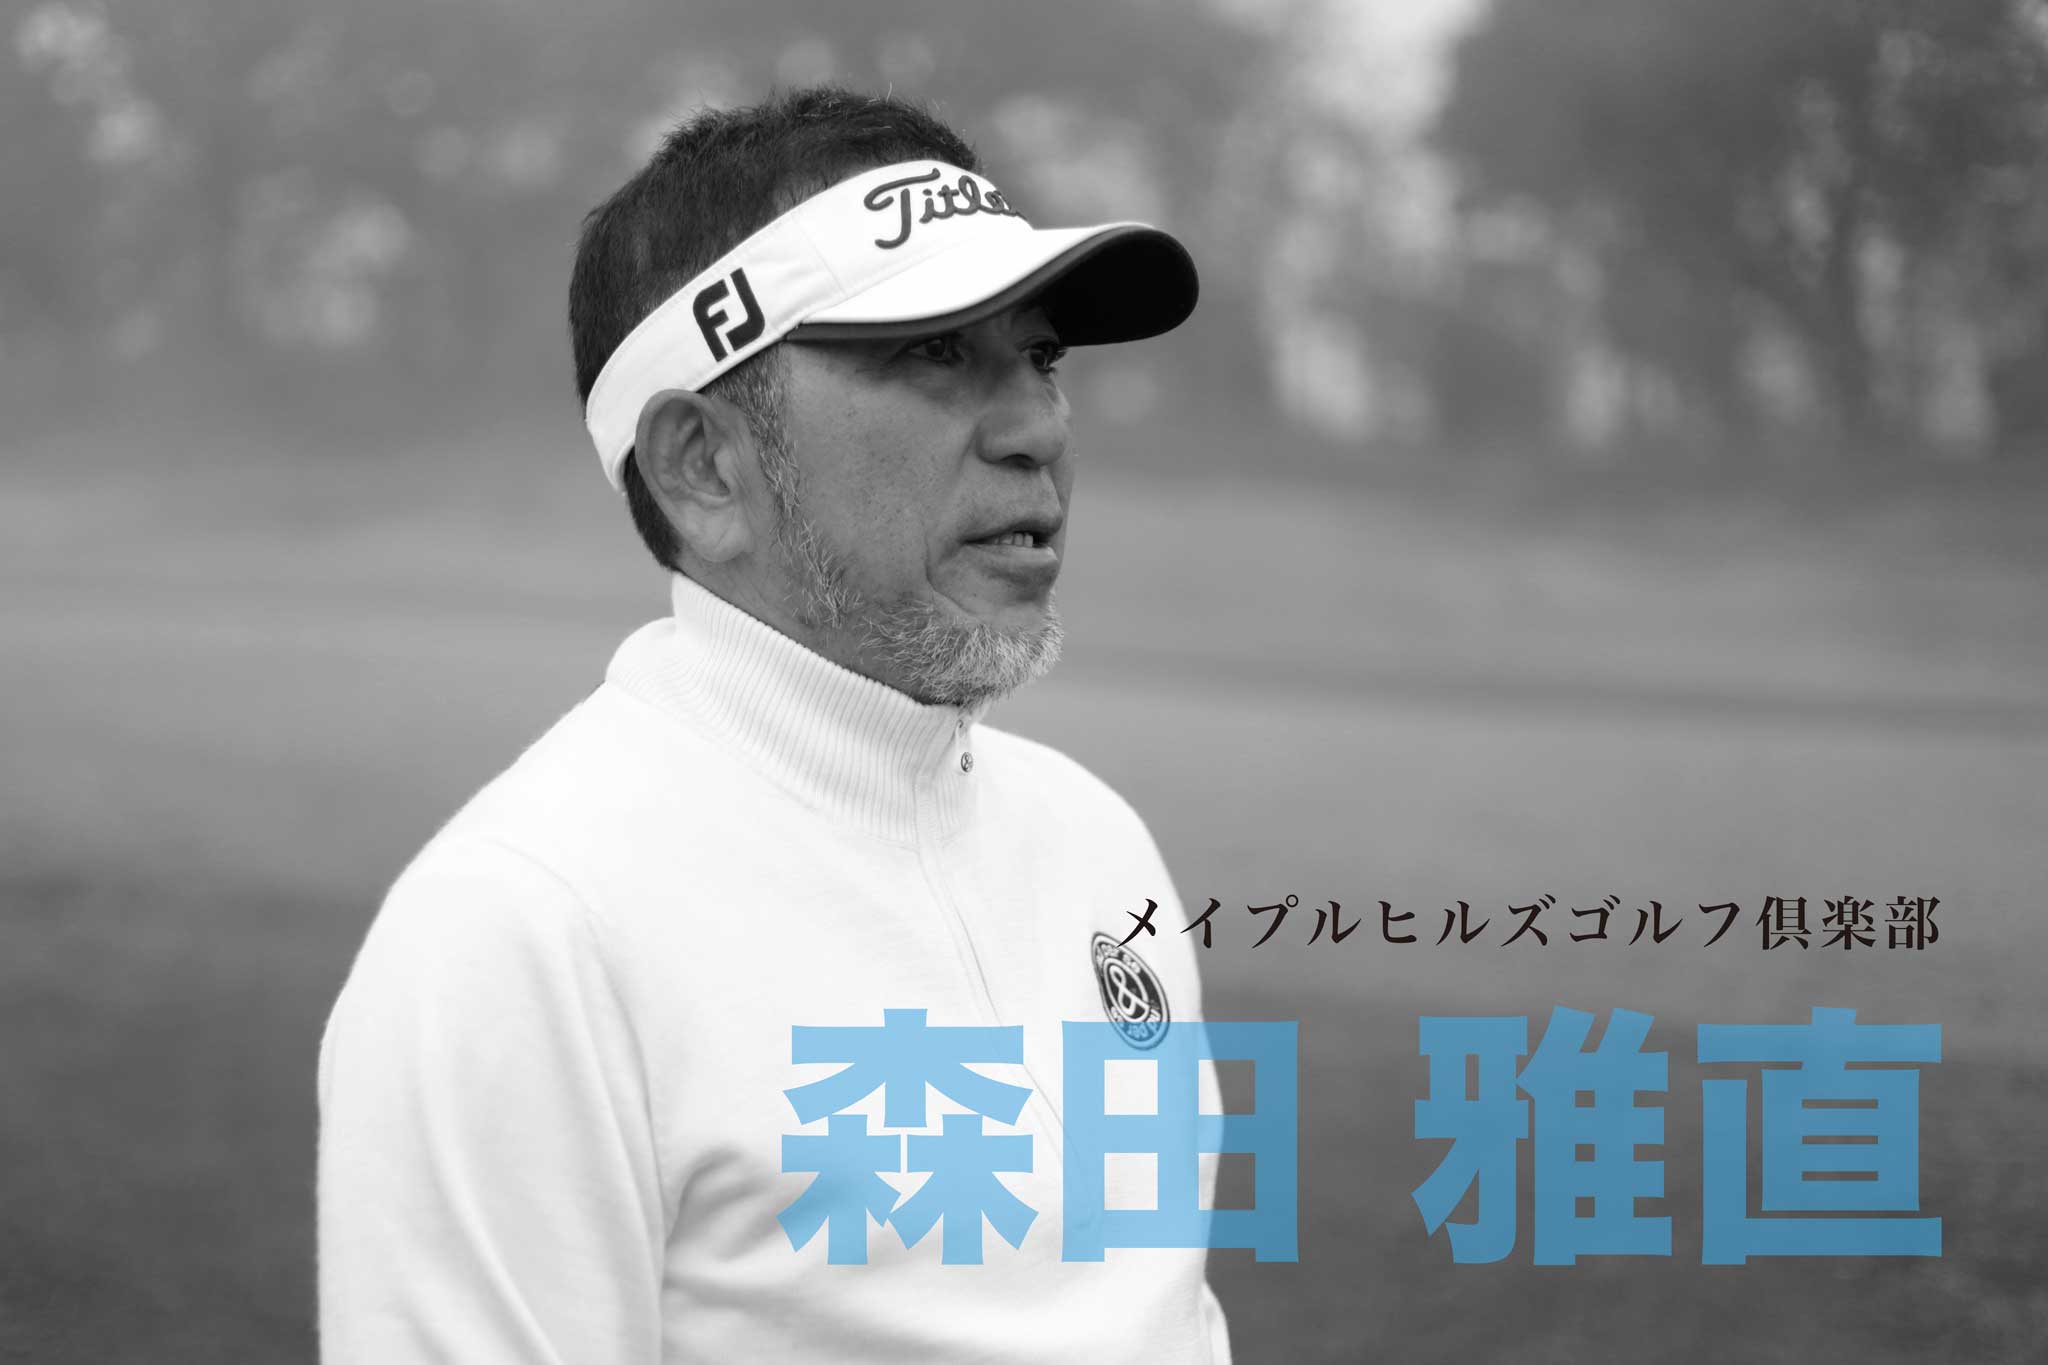 ゴルフサークル「Seven Eight セブンエイト」の「tuwamono ツワモノ」第2回のインタビュー森田雅直さんのページタイトル写真